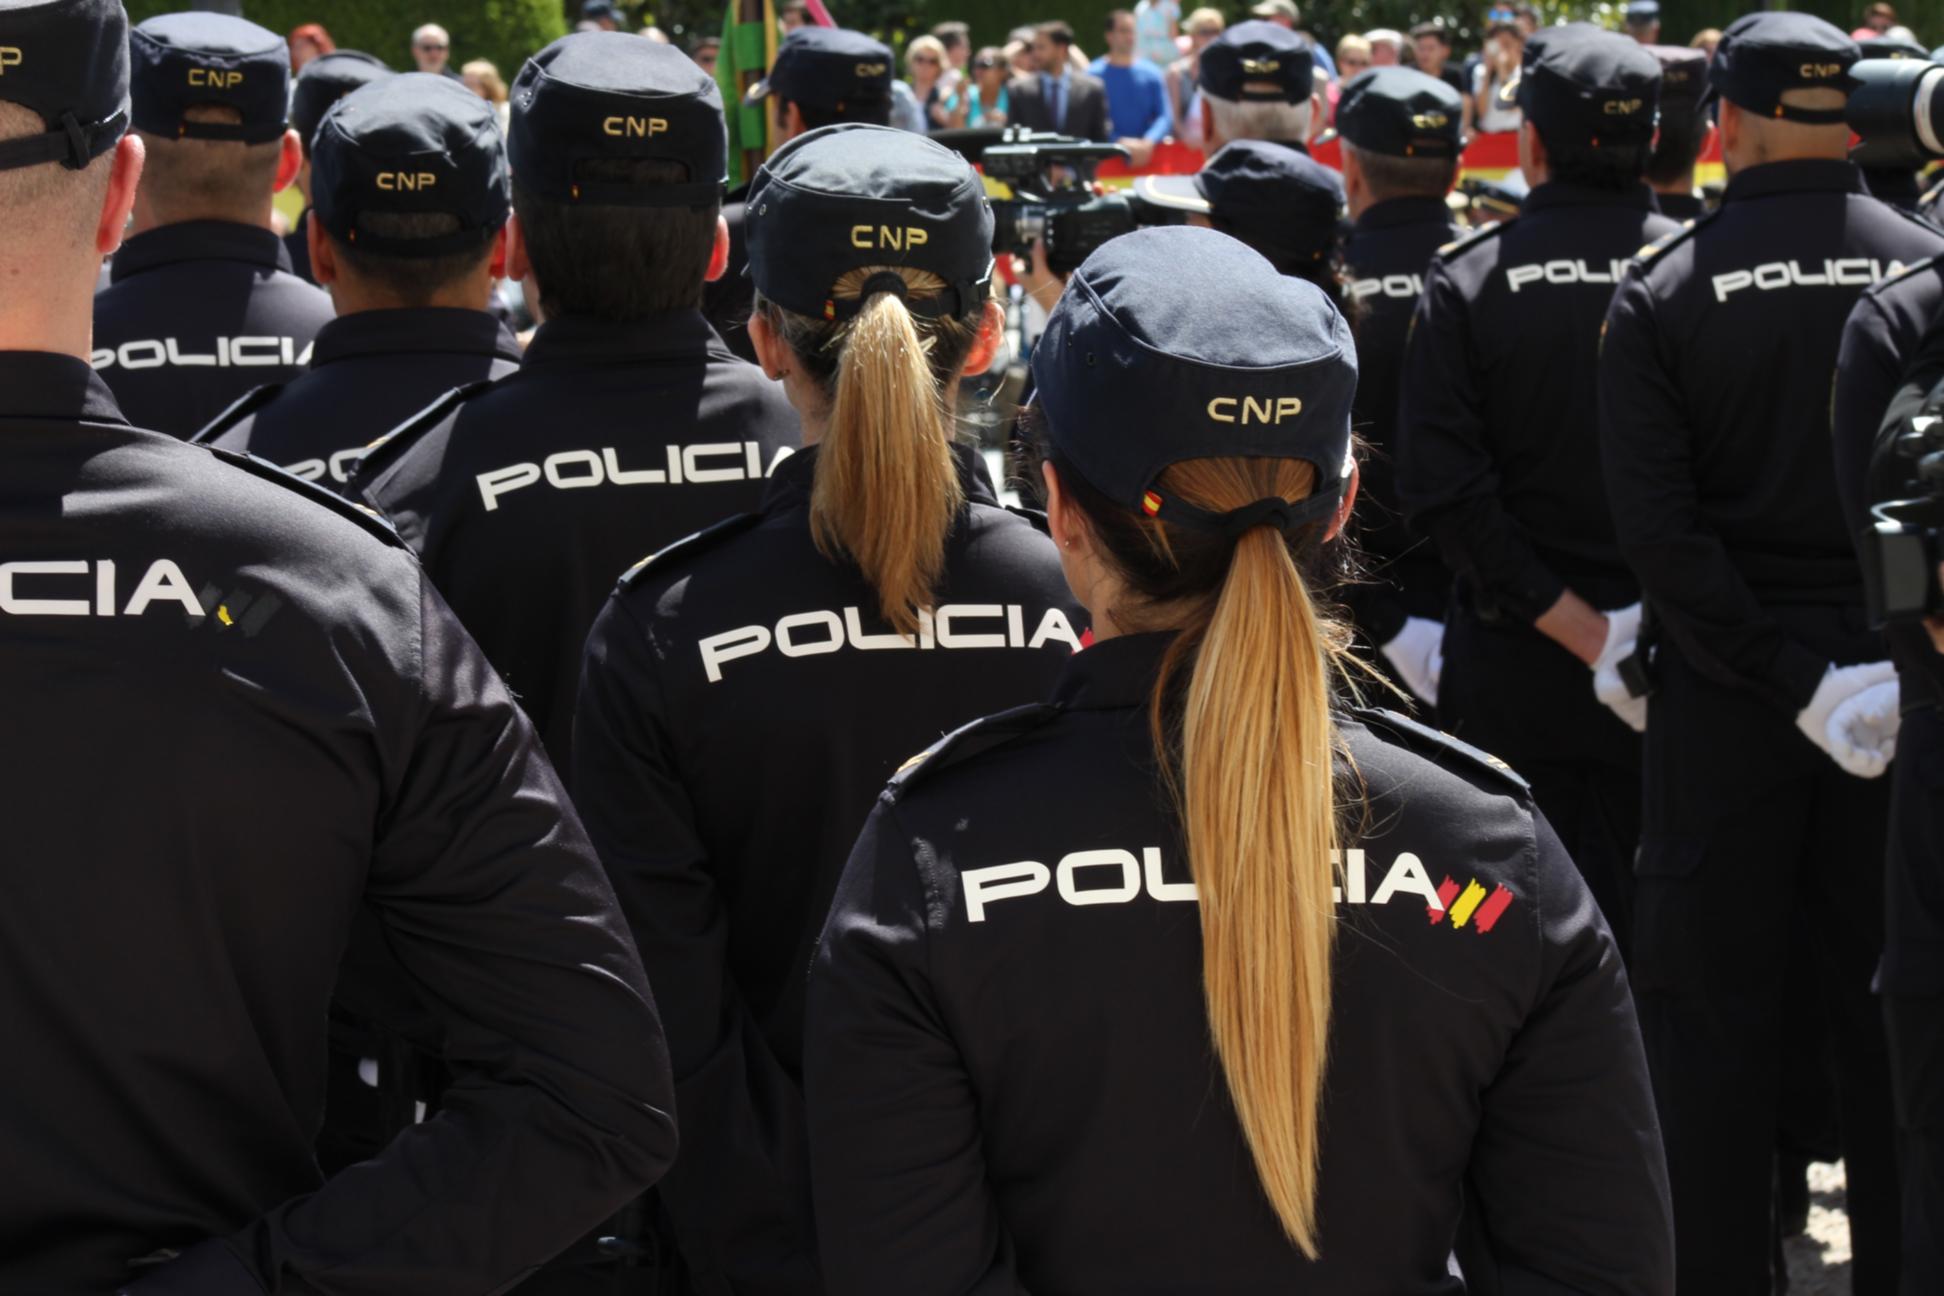 FOTO: IMAGEN DE ARCHIVO: MUJERES POLICÍA DE ESPALDAS EN FORMACION